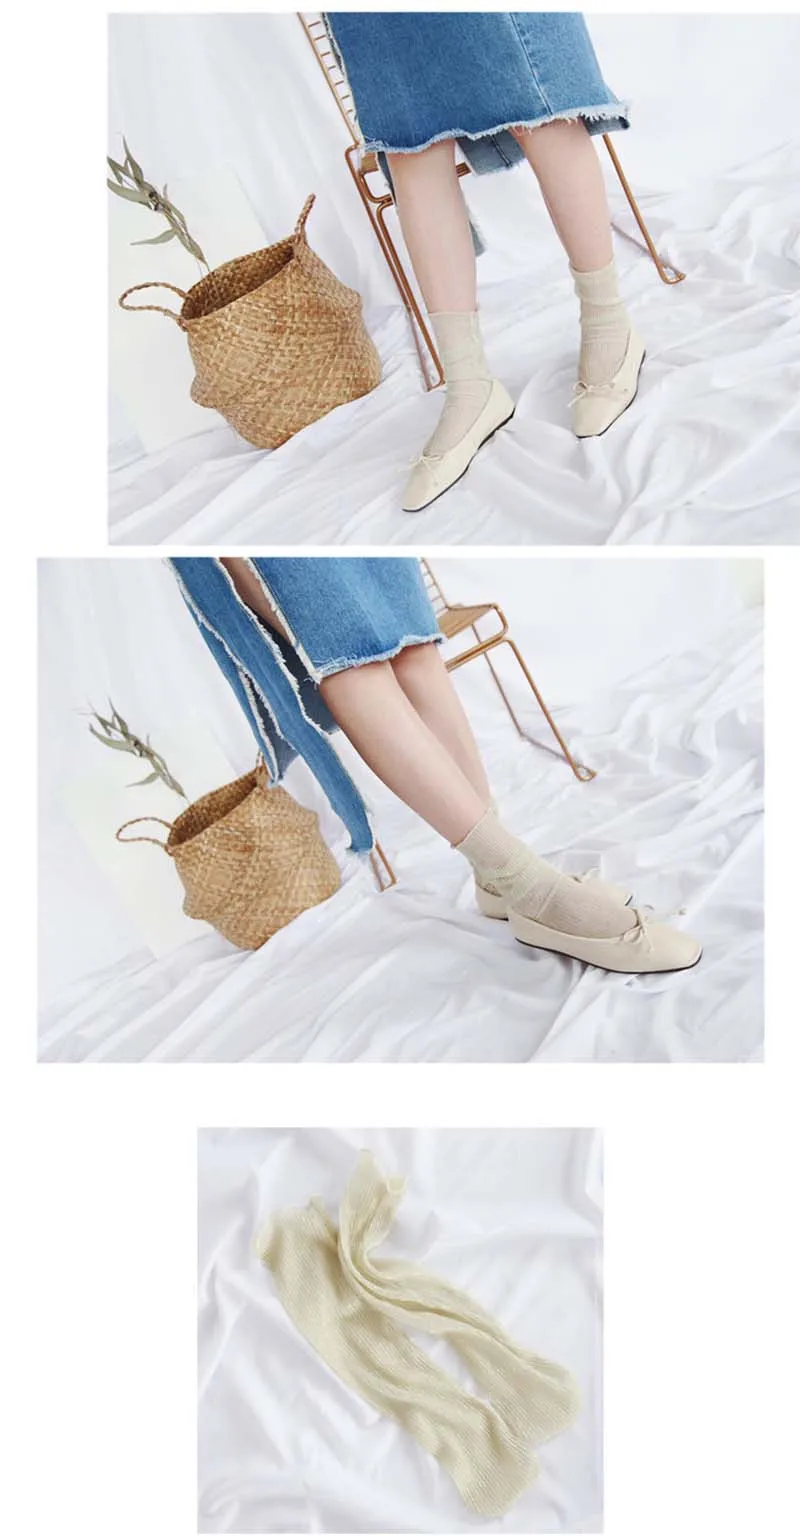 [WPLOIKJD] корейские модные носки, Новое поступление, блестящие прозрачные носки, золотые, серебряные шелковые женские художественные блестящие женские носки